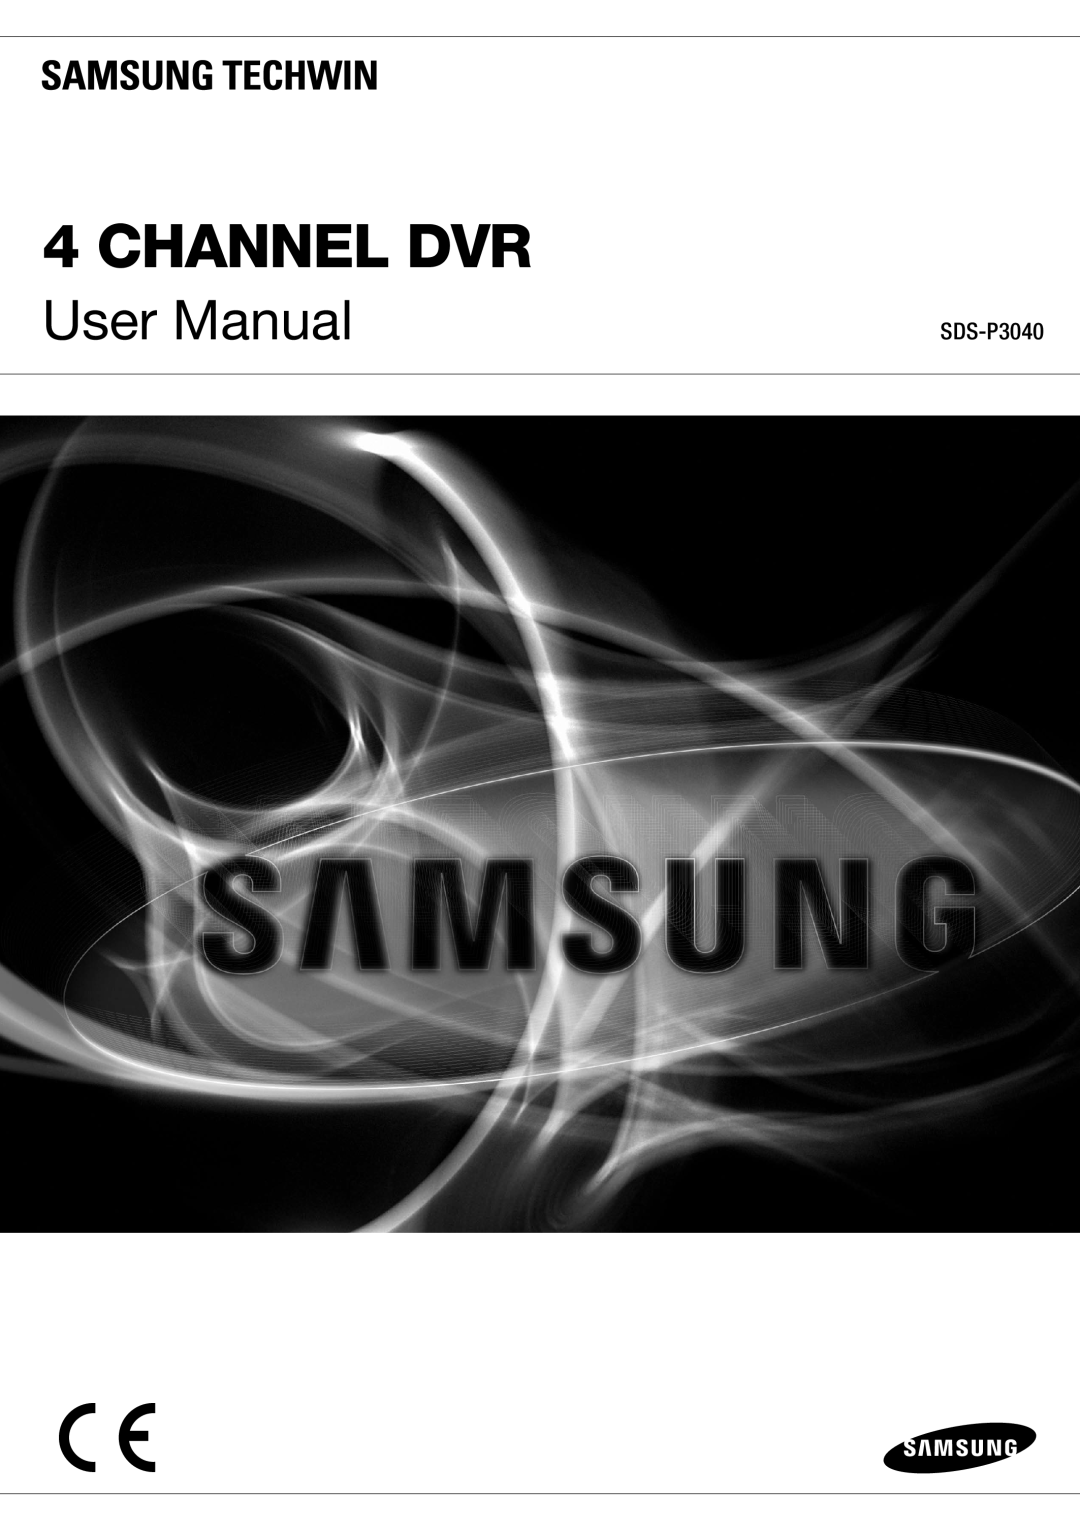 Samsung SDR3100 user manual SDS-P3040, Channel Dvr, User Manual 